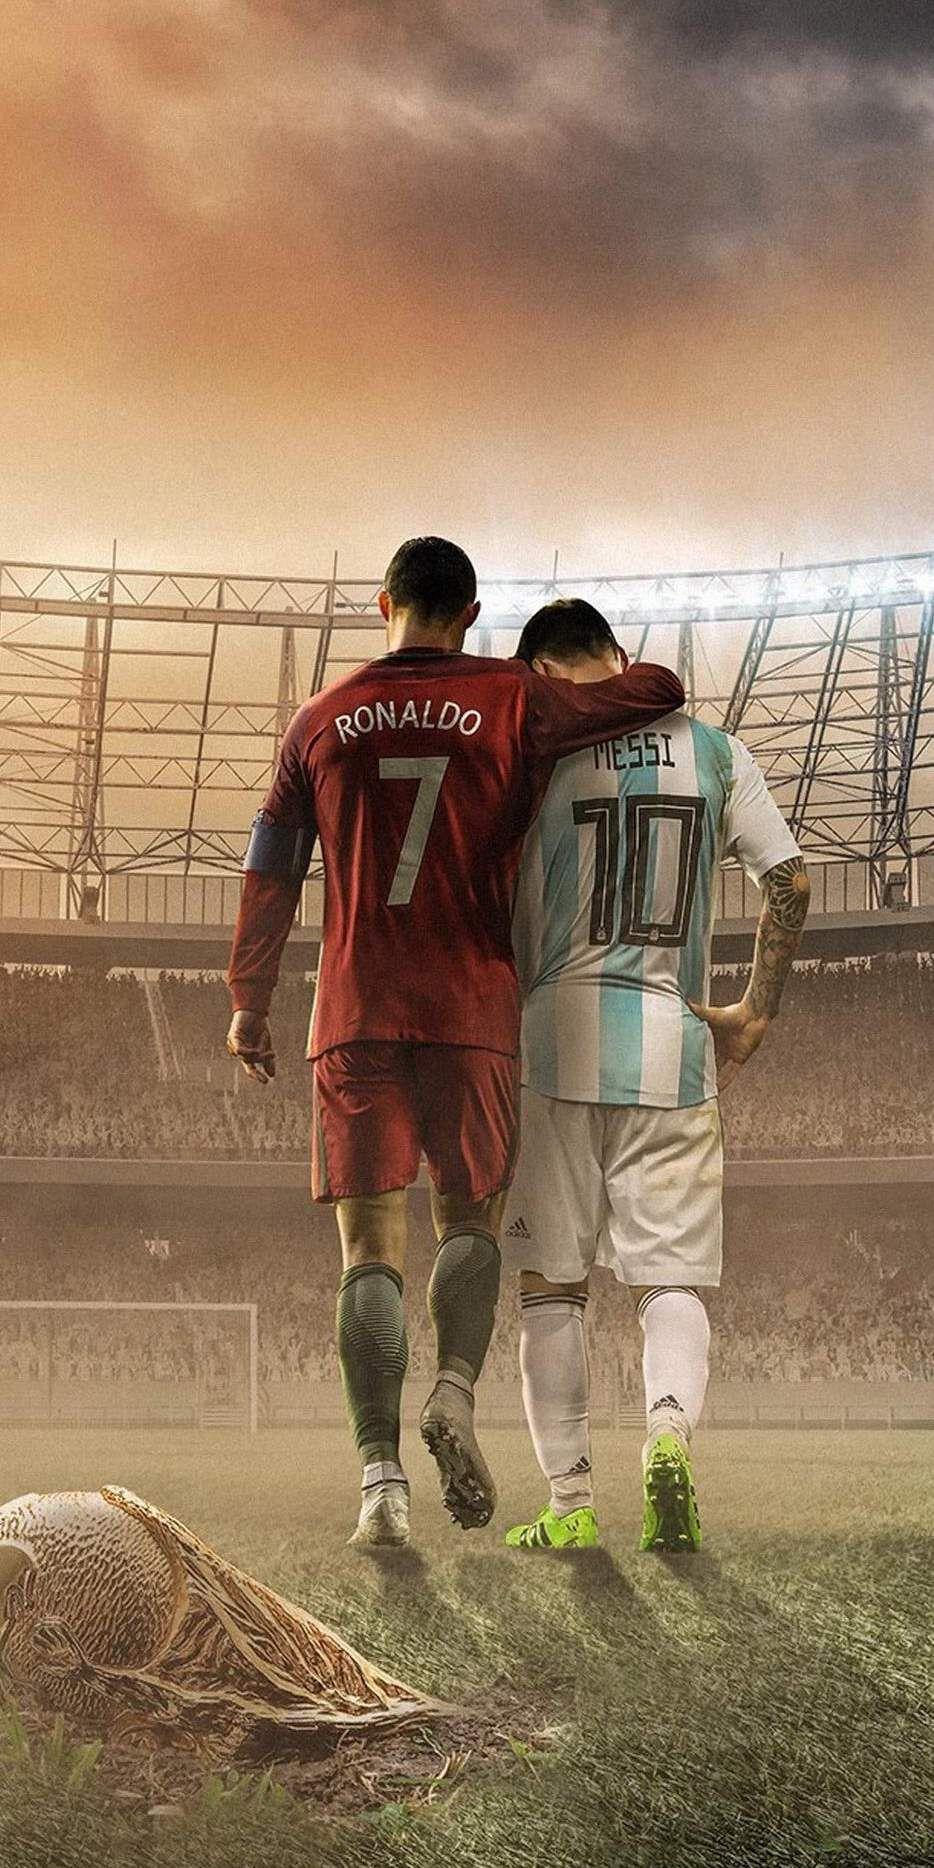 “Ronaldo và Messi được xem là cặp đôi hoàn hảo trong làng bóng đá. Với những bức hình nền chất lượng cao và đẹp mắt, giúp bạn có thể tỏa sáng ngay từ lần đầu tiên sử dụng. Hãy thể hiện tình yêu của mình đến với hộp màn hình, tải ngay hình nền Ronaldo và Messi nhé!”